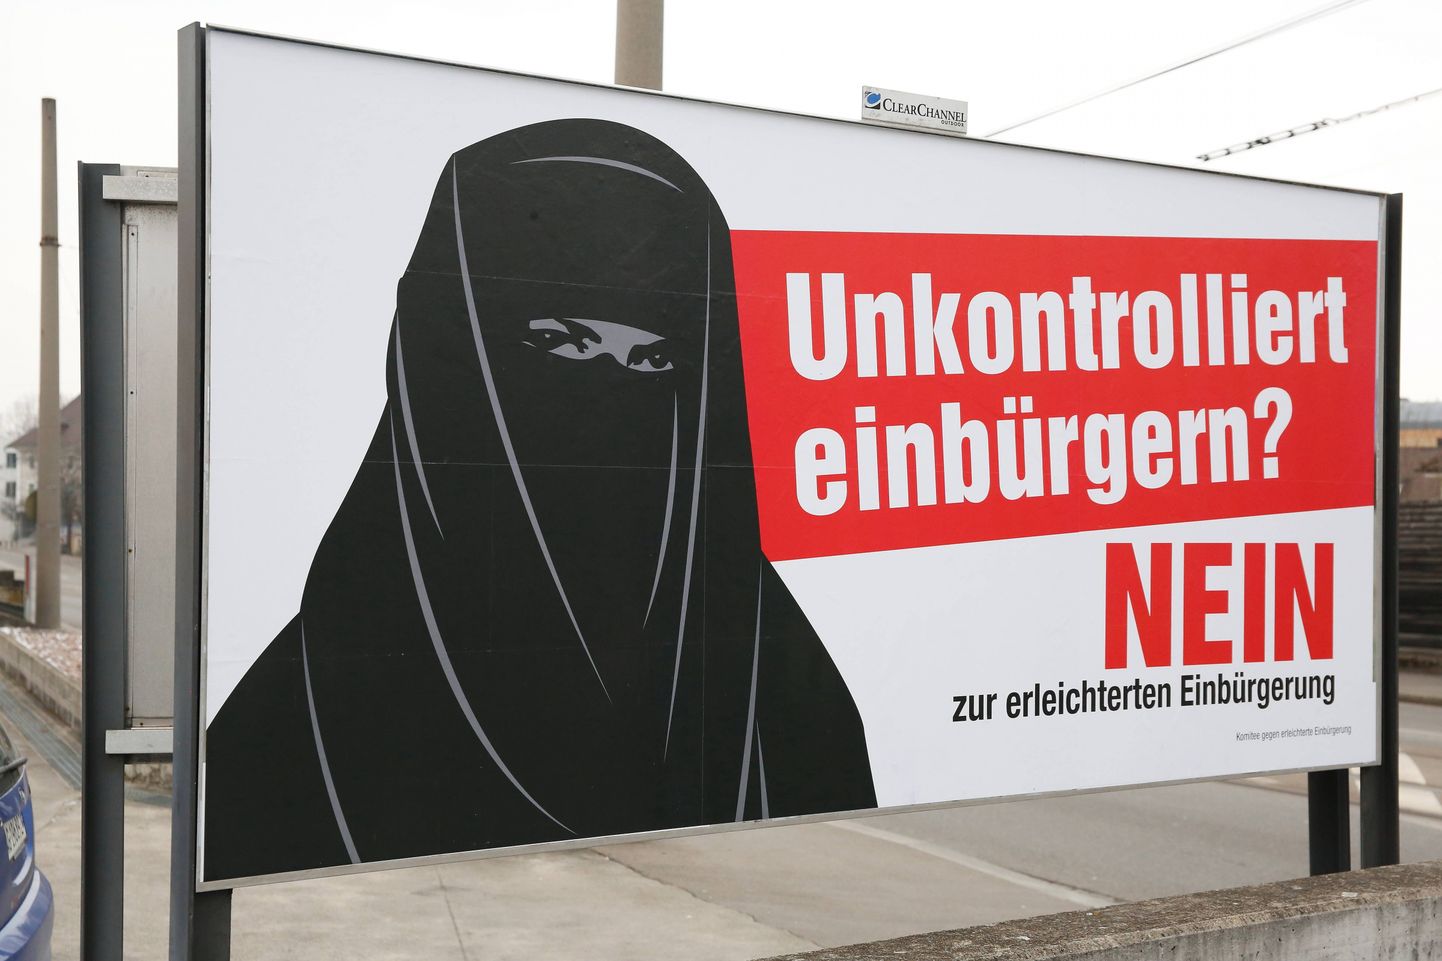 Burkat kandva naise eest hoiatav plakat hiljutise kodakondsusrefrendumi kampaania ajal Baselis.